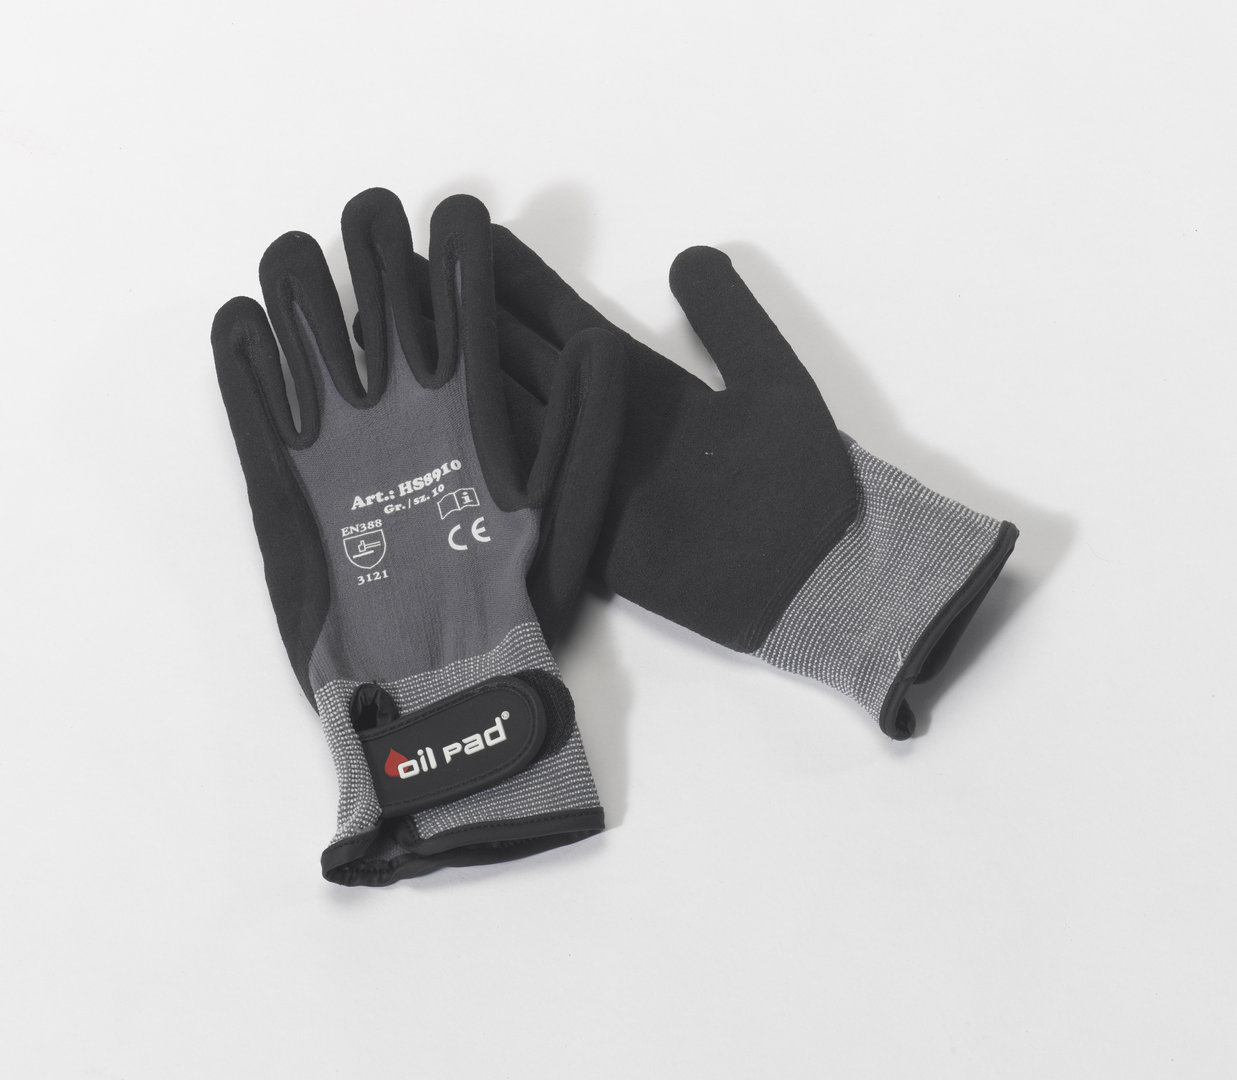 OILPAD-Mechaniker-Handschuhe